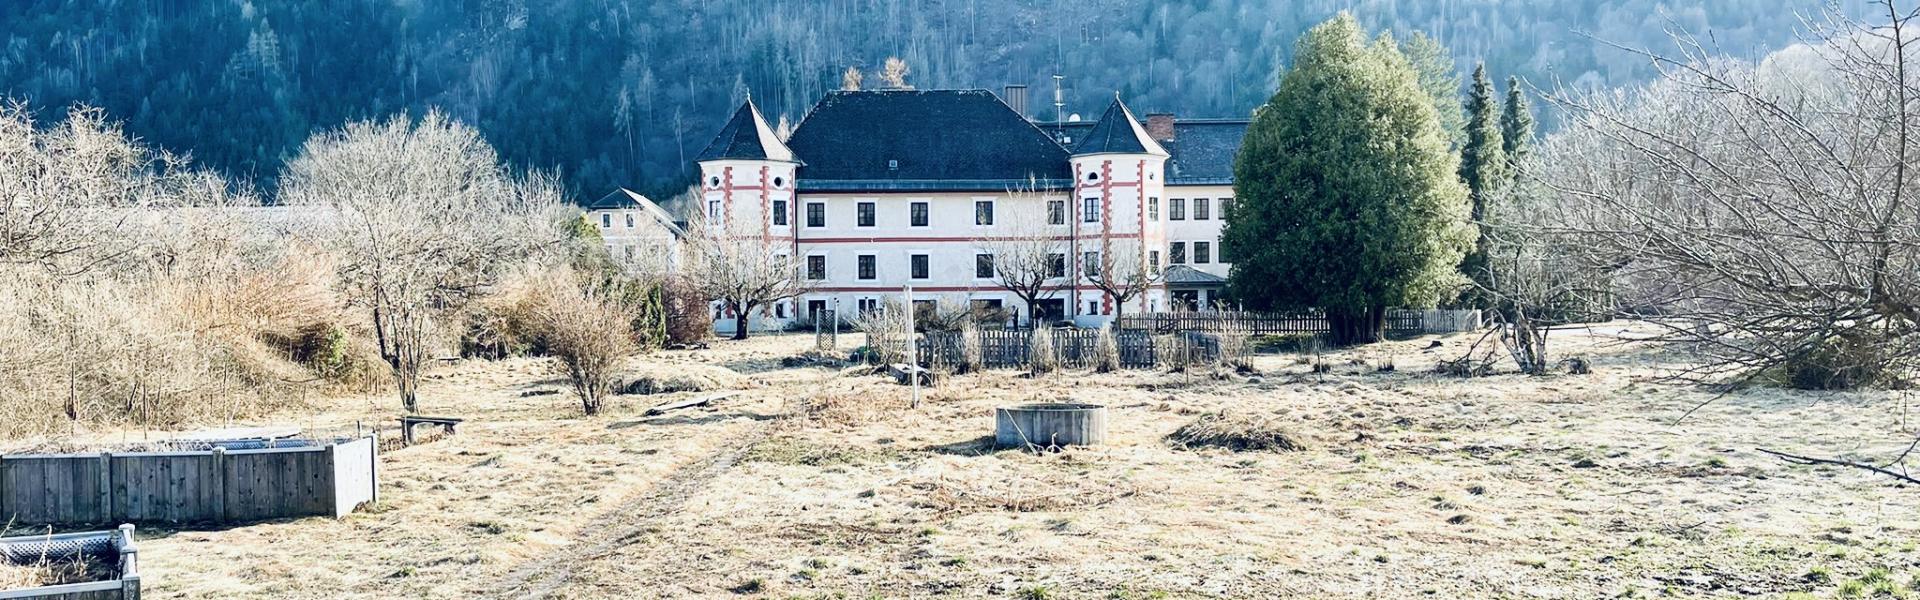 Schloss-Drauhofen_Kaernten_soll_Flüchtlingen_eine_neue_Heimat_des_Willkommens_bieten_cHASSLCHER-Gruppe